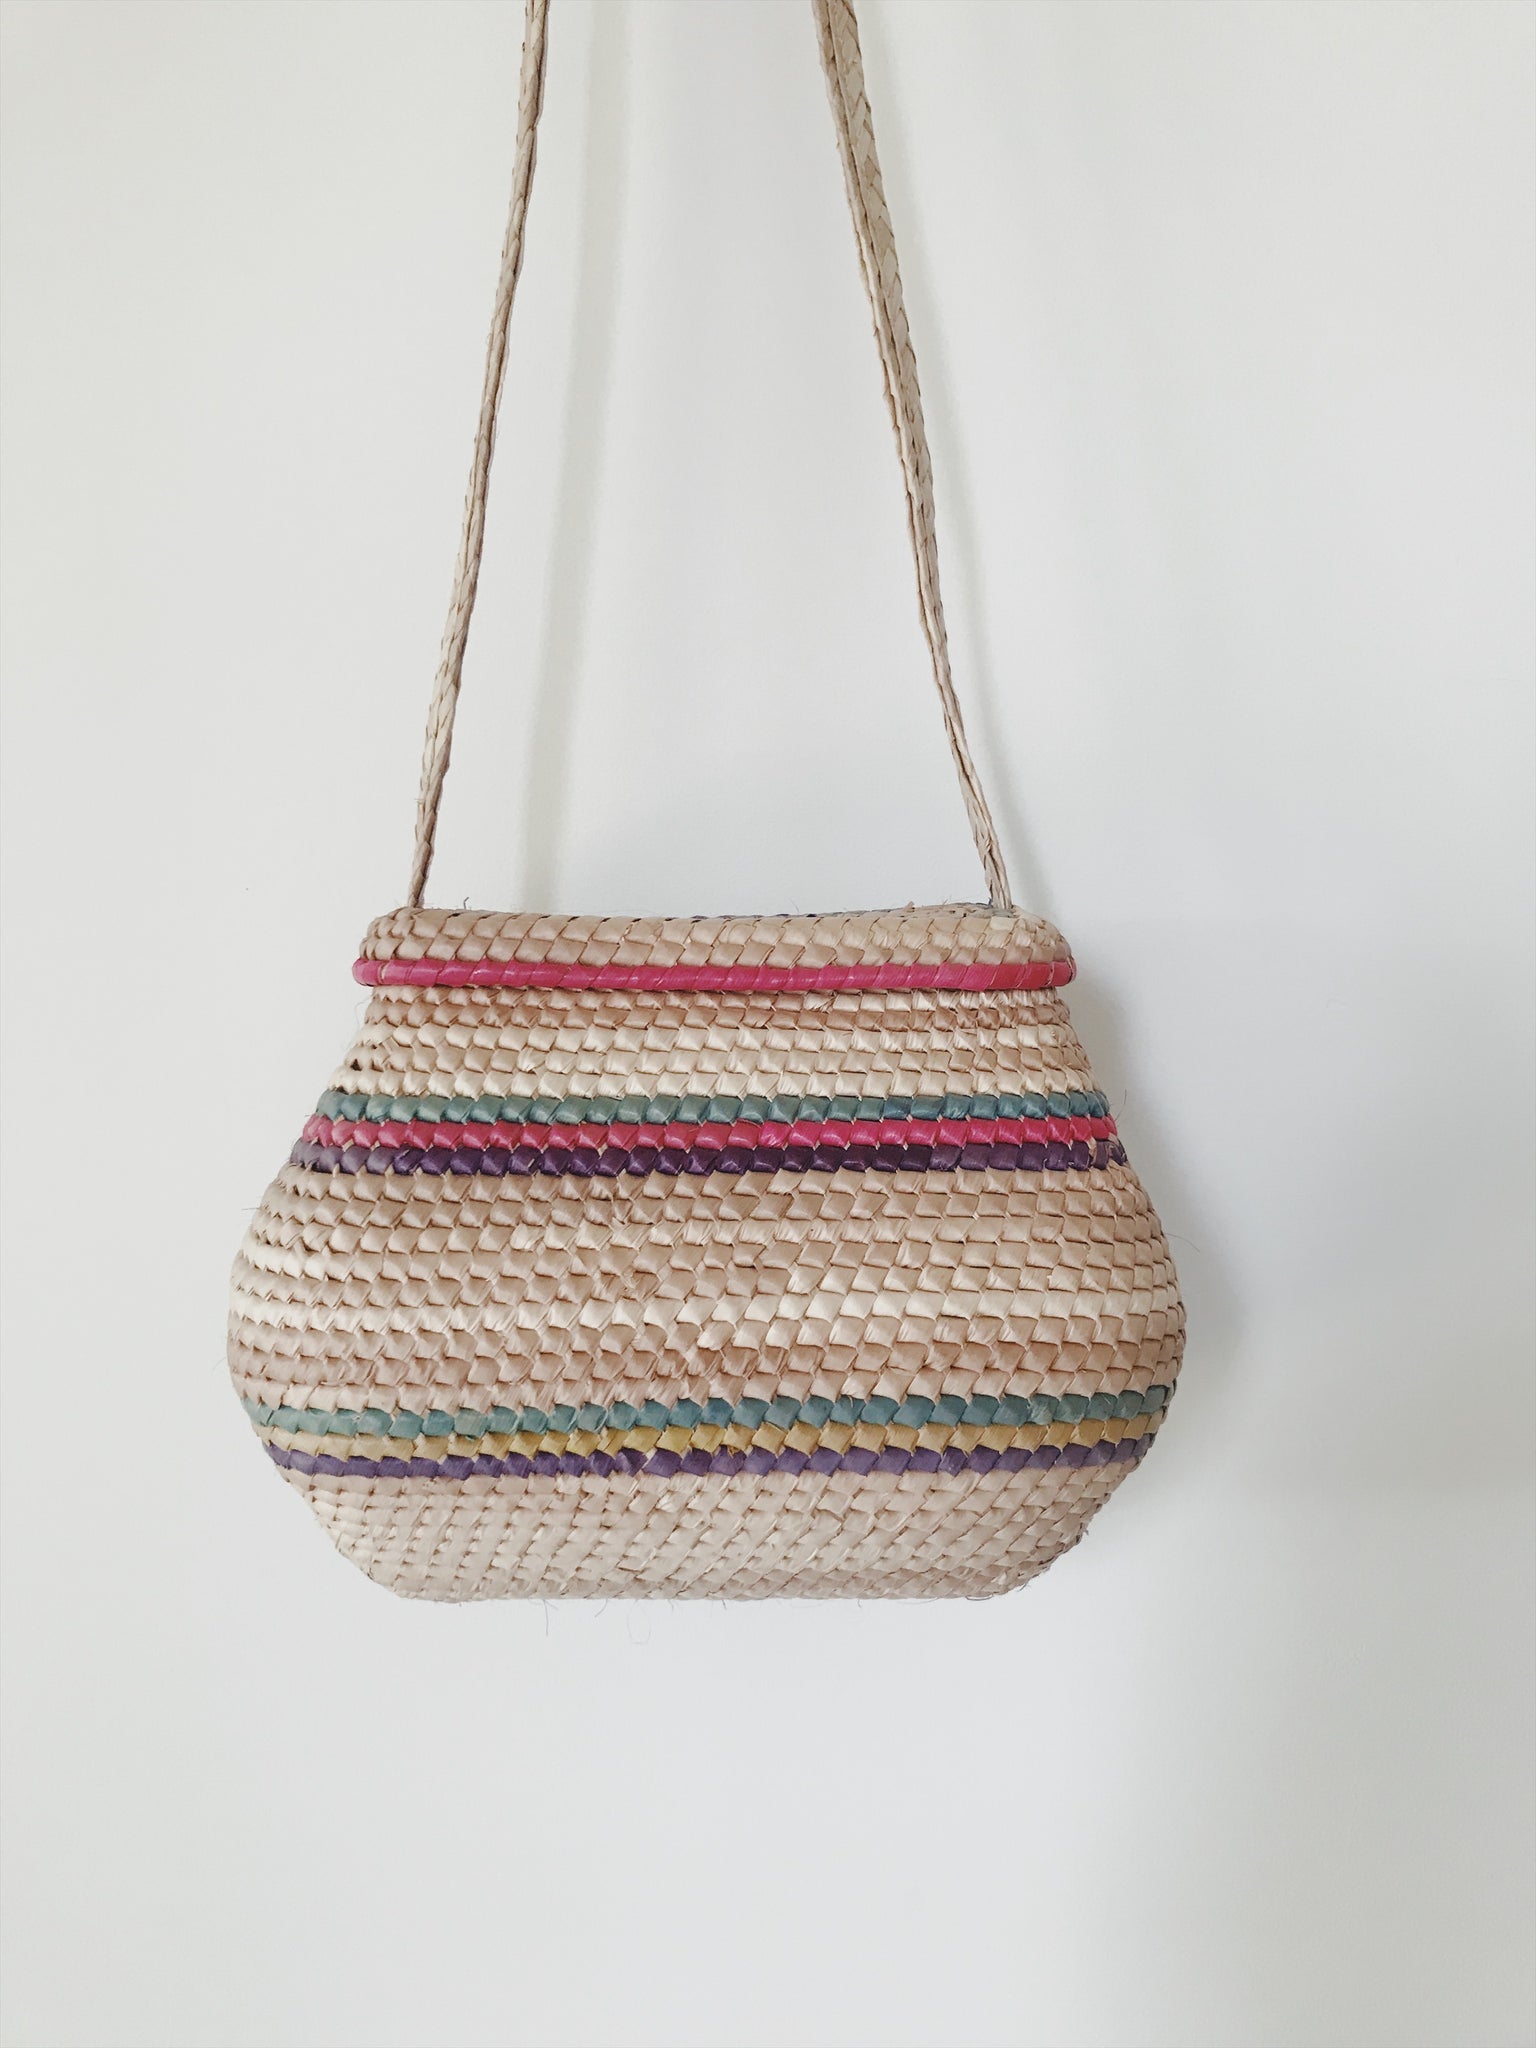 Basket Bag – Companion Goods